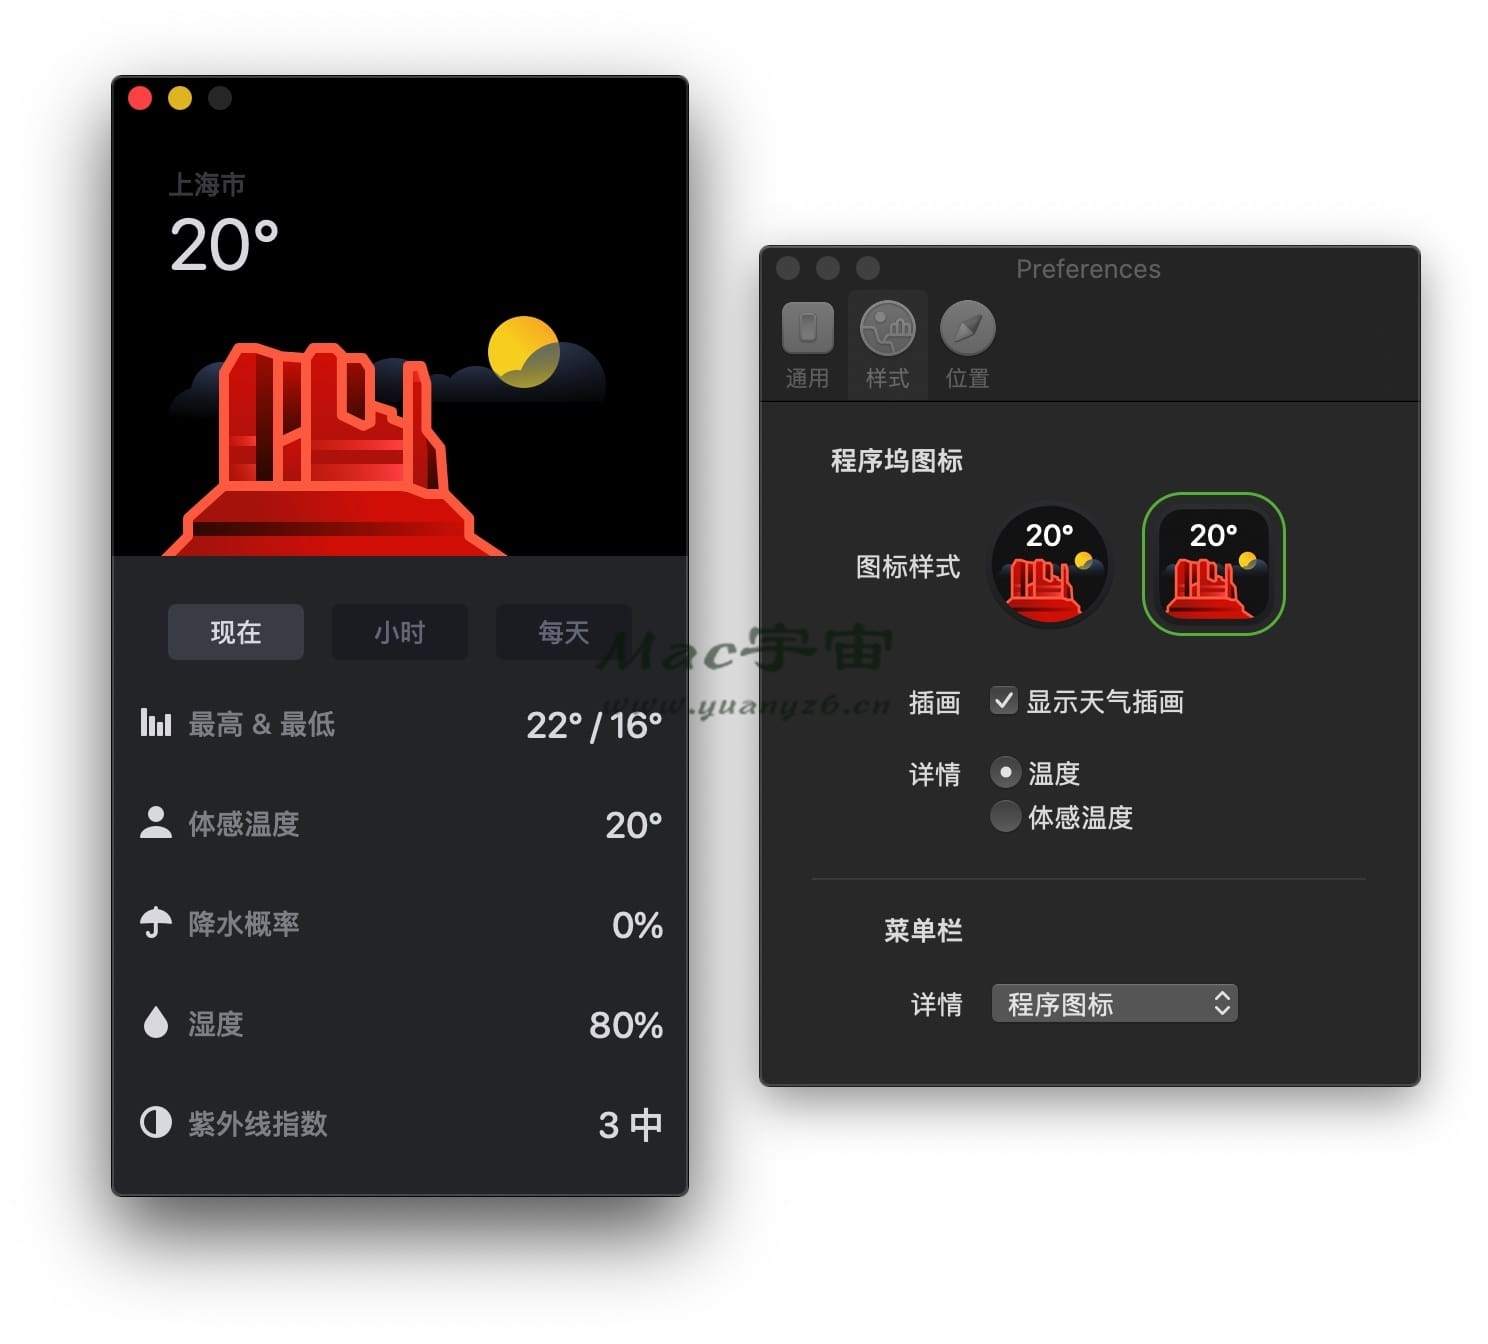 迷你天气 for Mac v1.4 中文破解版 Mac天气预报应用 苹果电脑